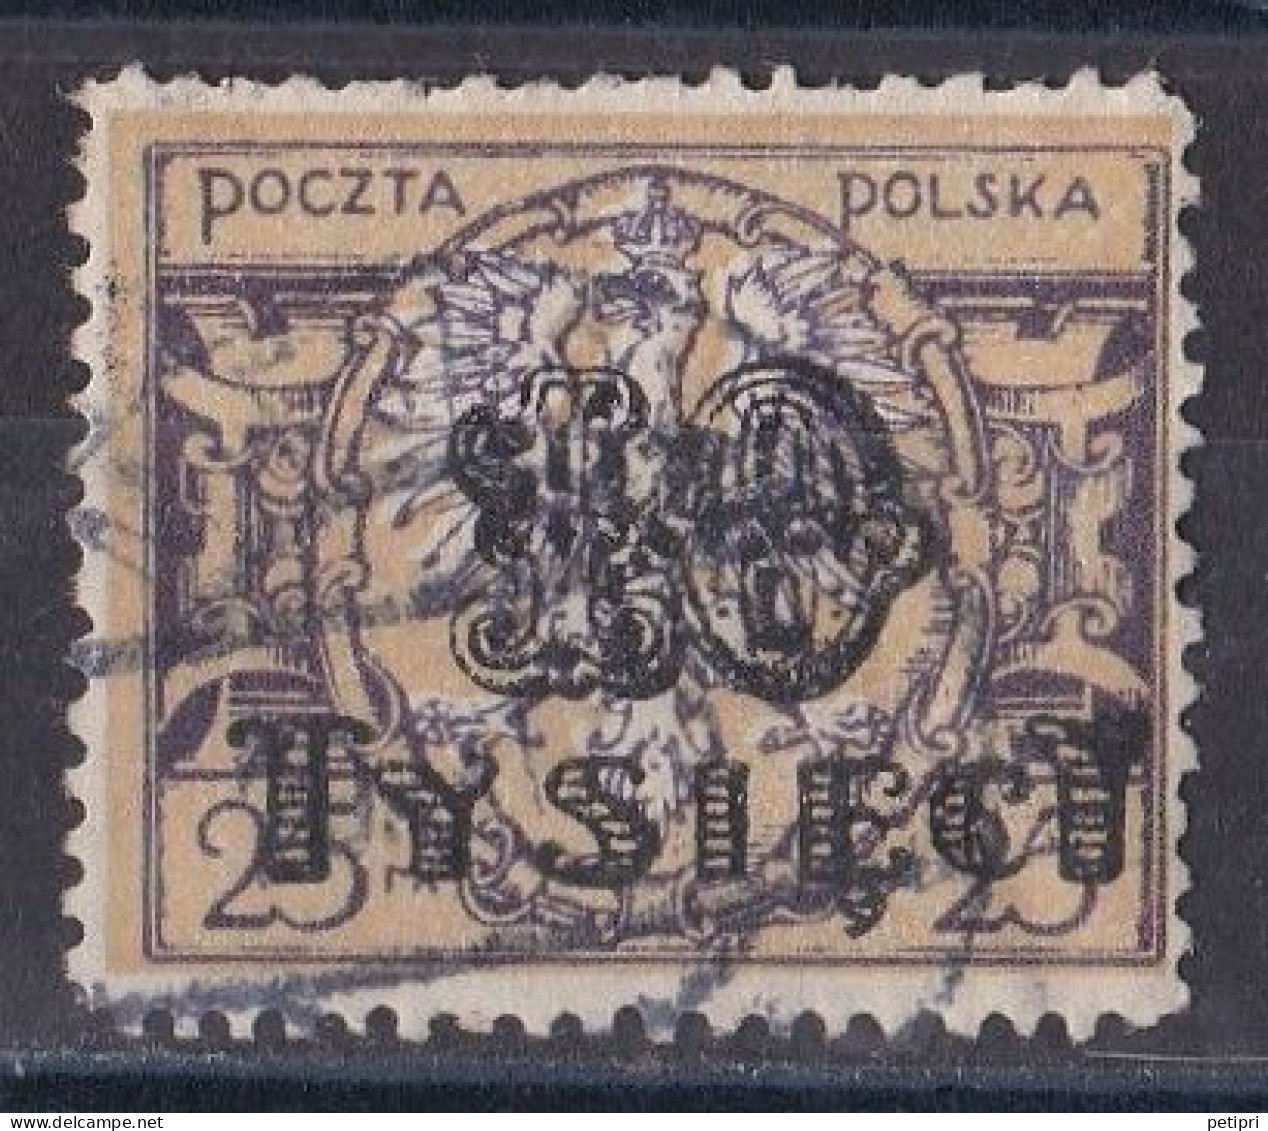 Pologne - République 1919  -  1939   Y & T N °  271   Oblitéré - Used Stamps